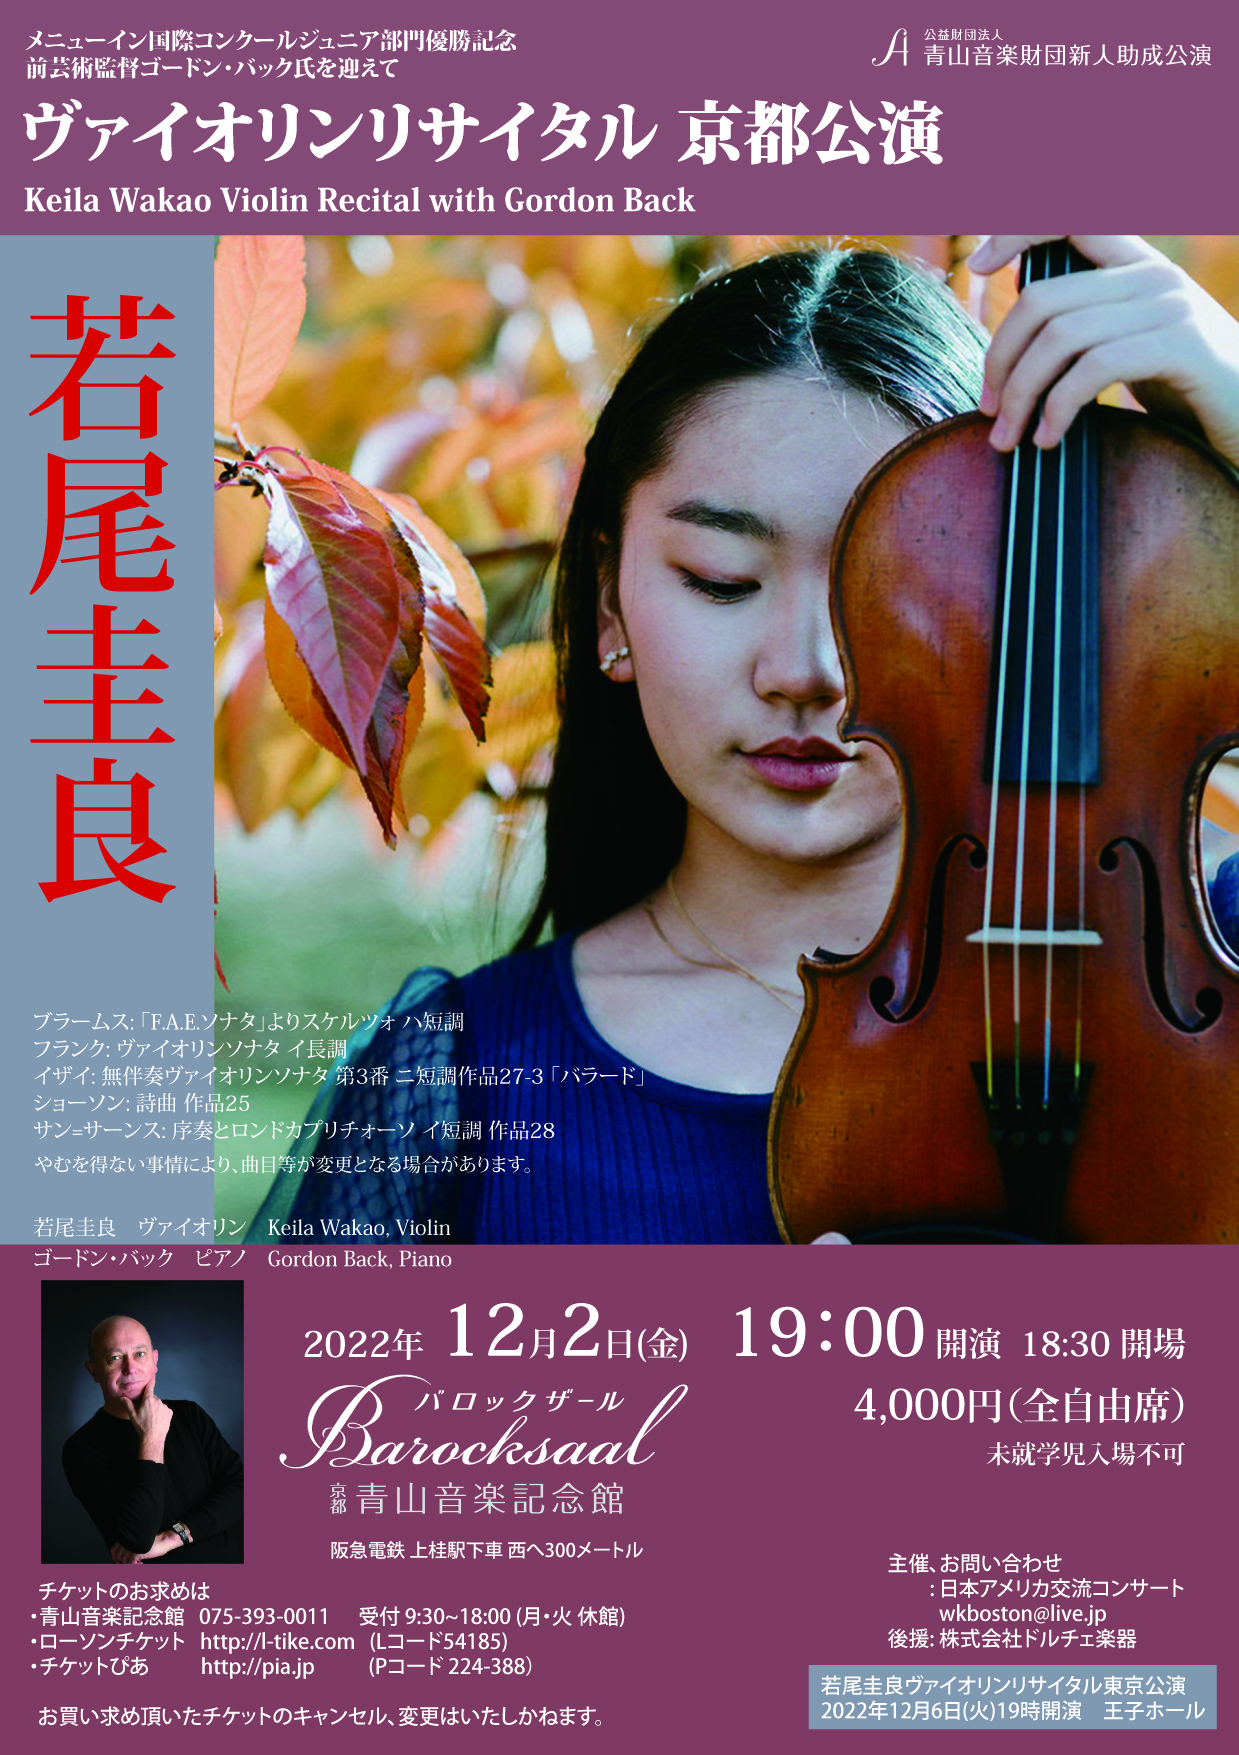 Keira Wakao Violin Recital in Kyoto